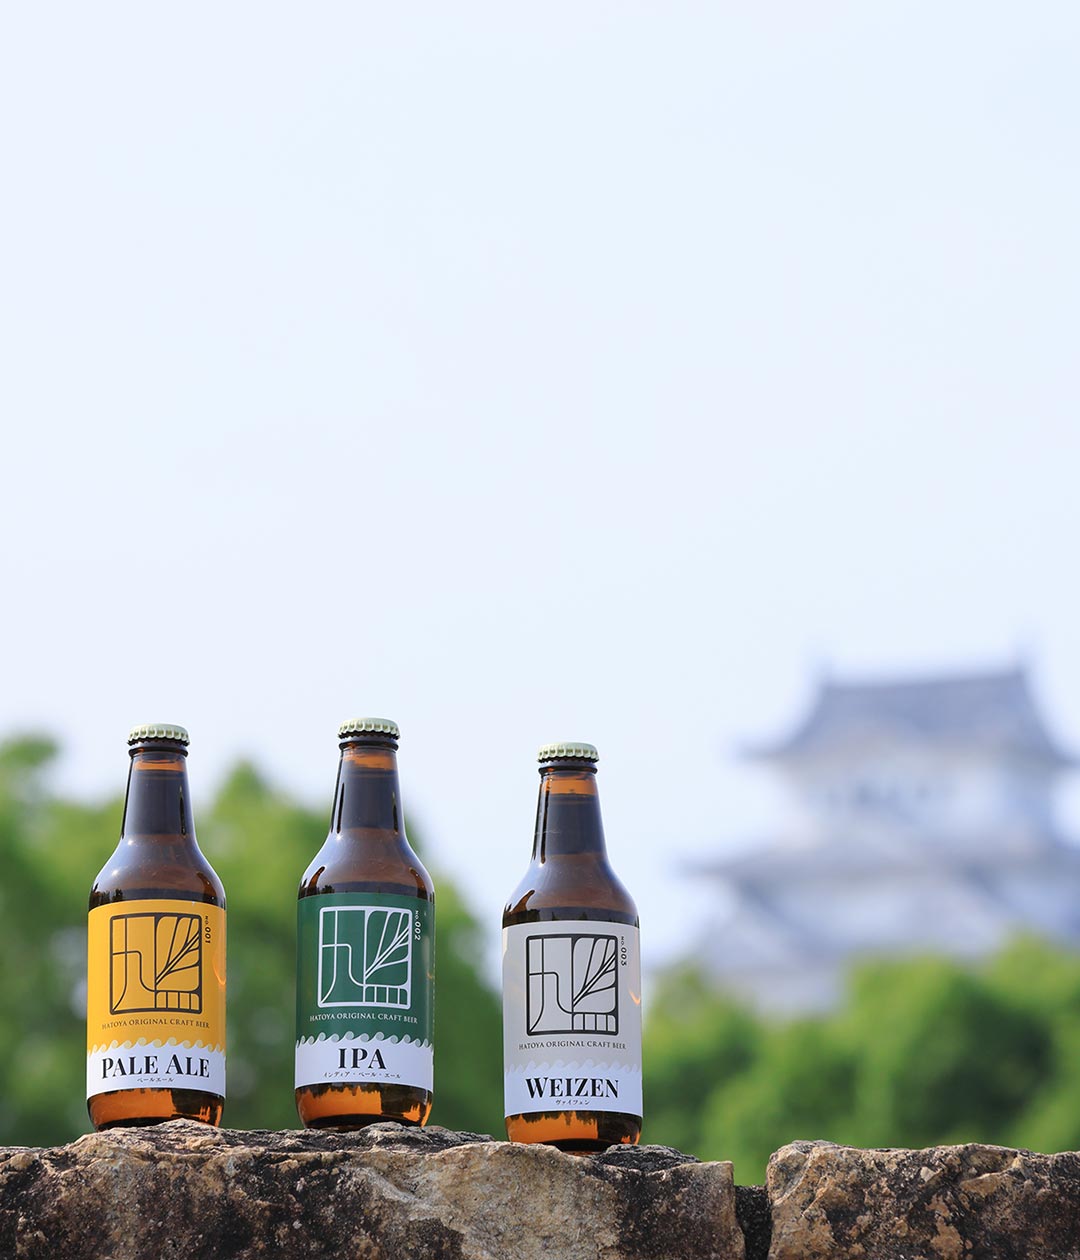 新緑を背景に3種類のビールが高台に並んでいる写真